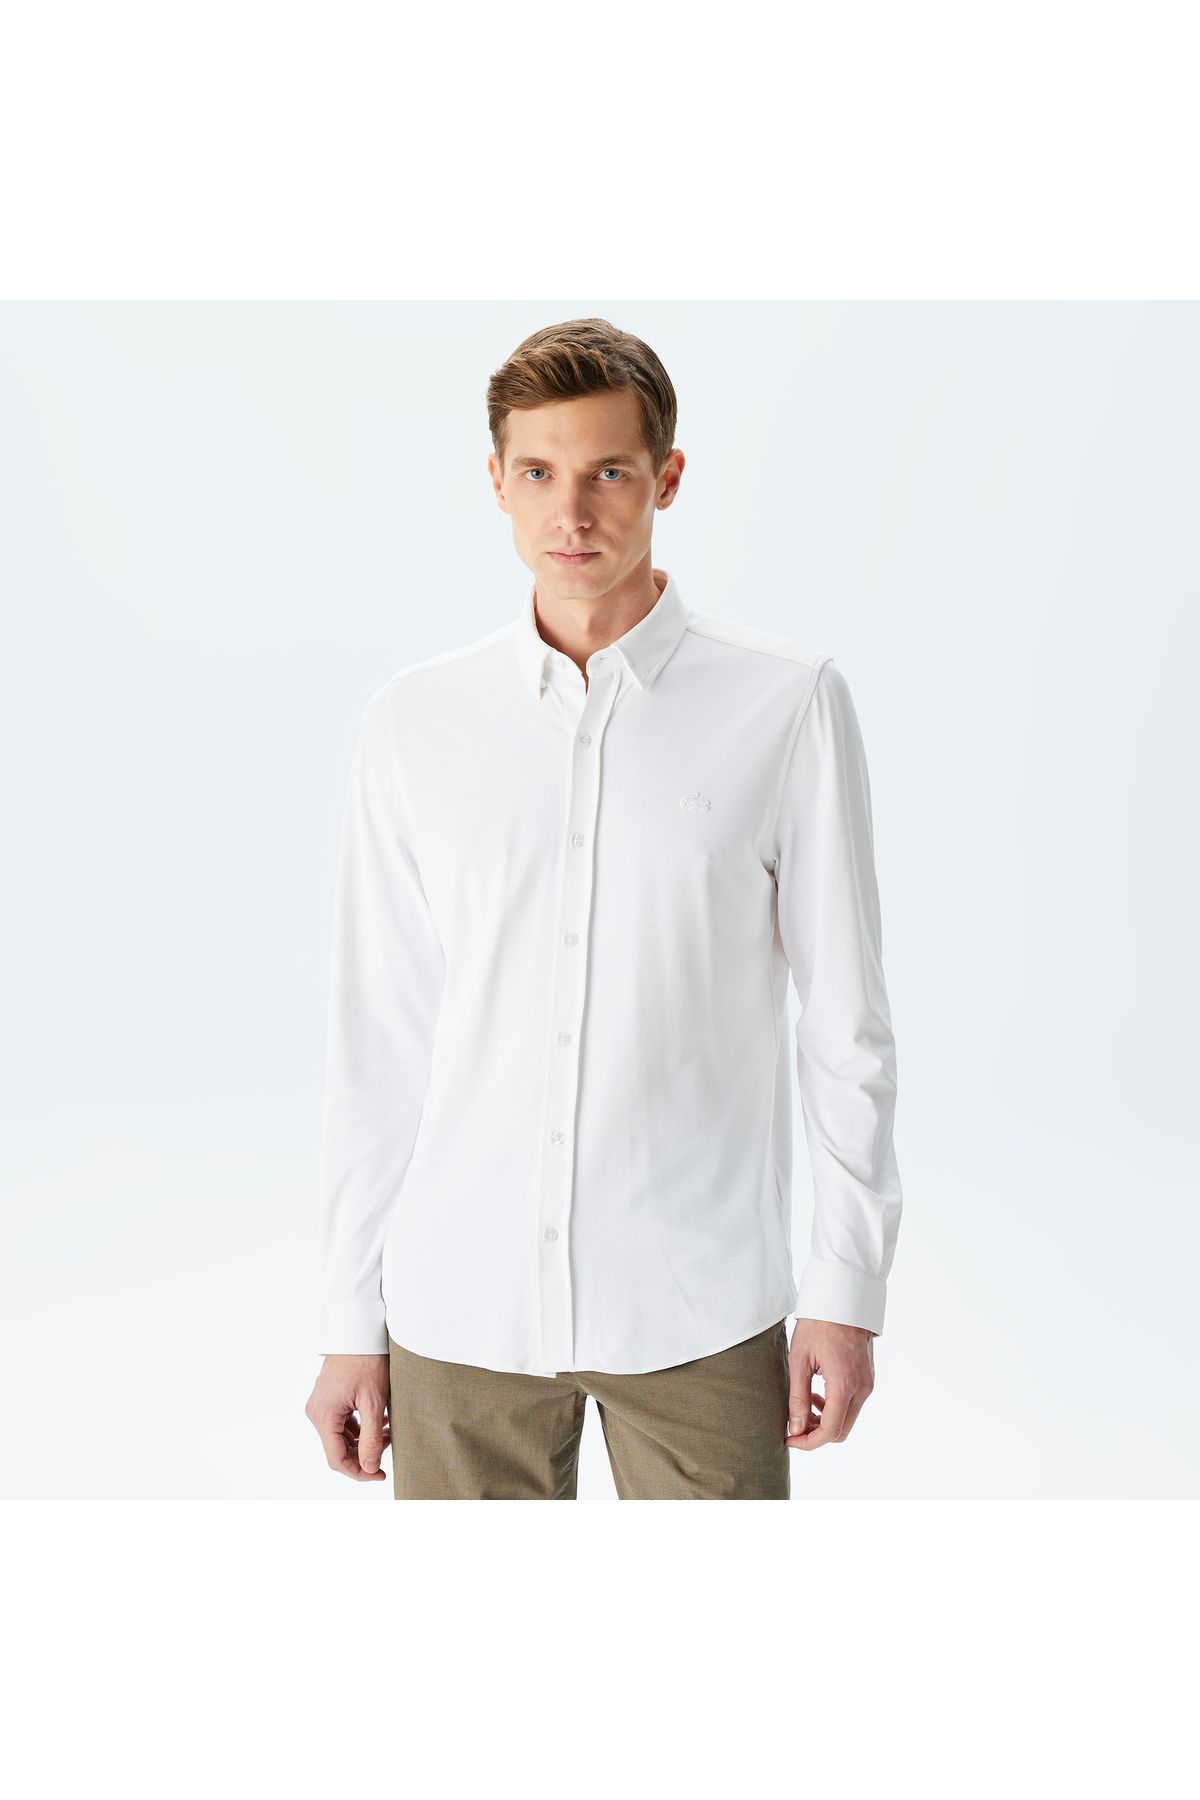 Lacoste پیراهن سفید باریک مردانه